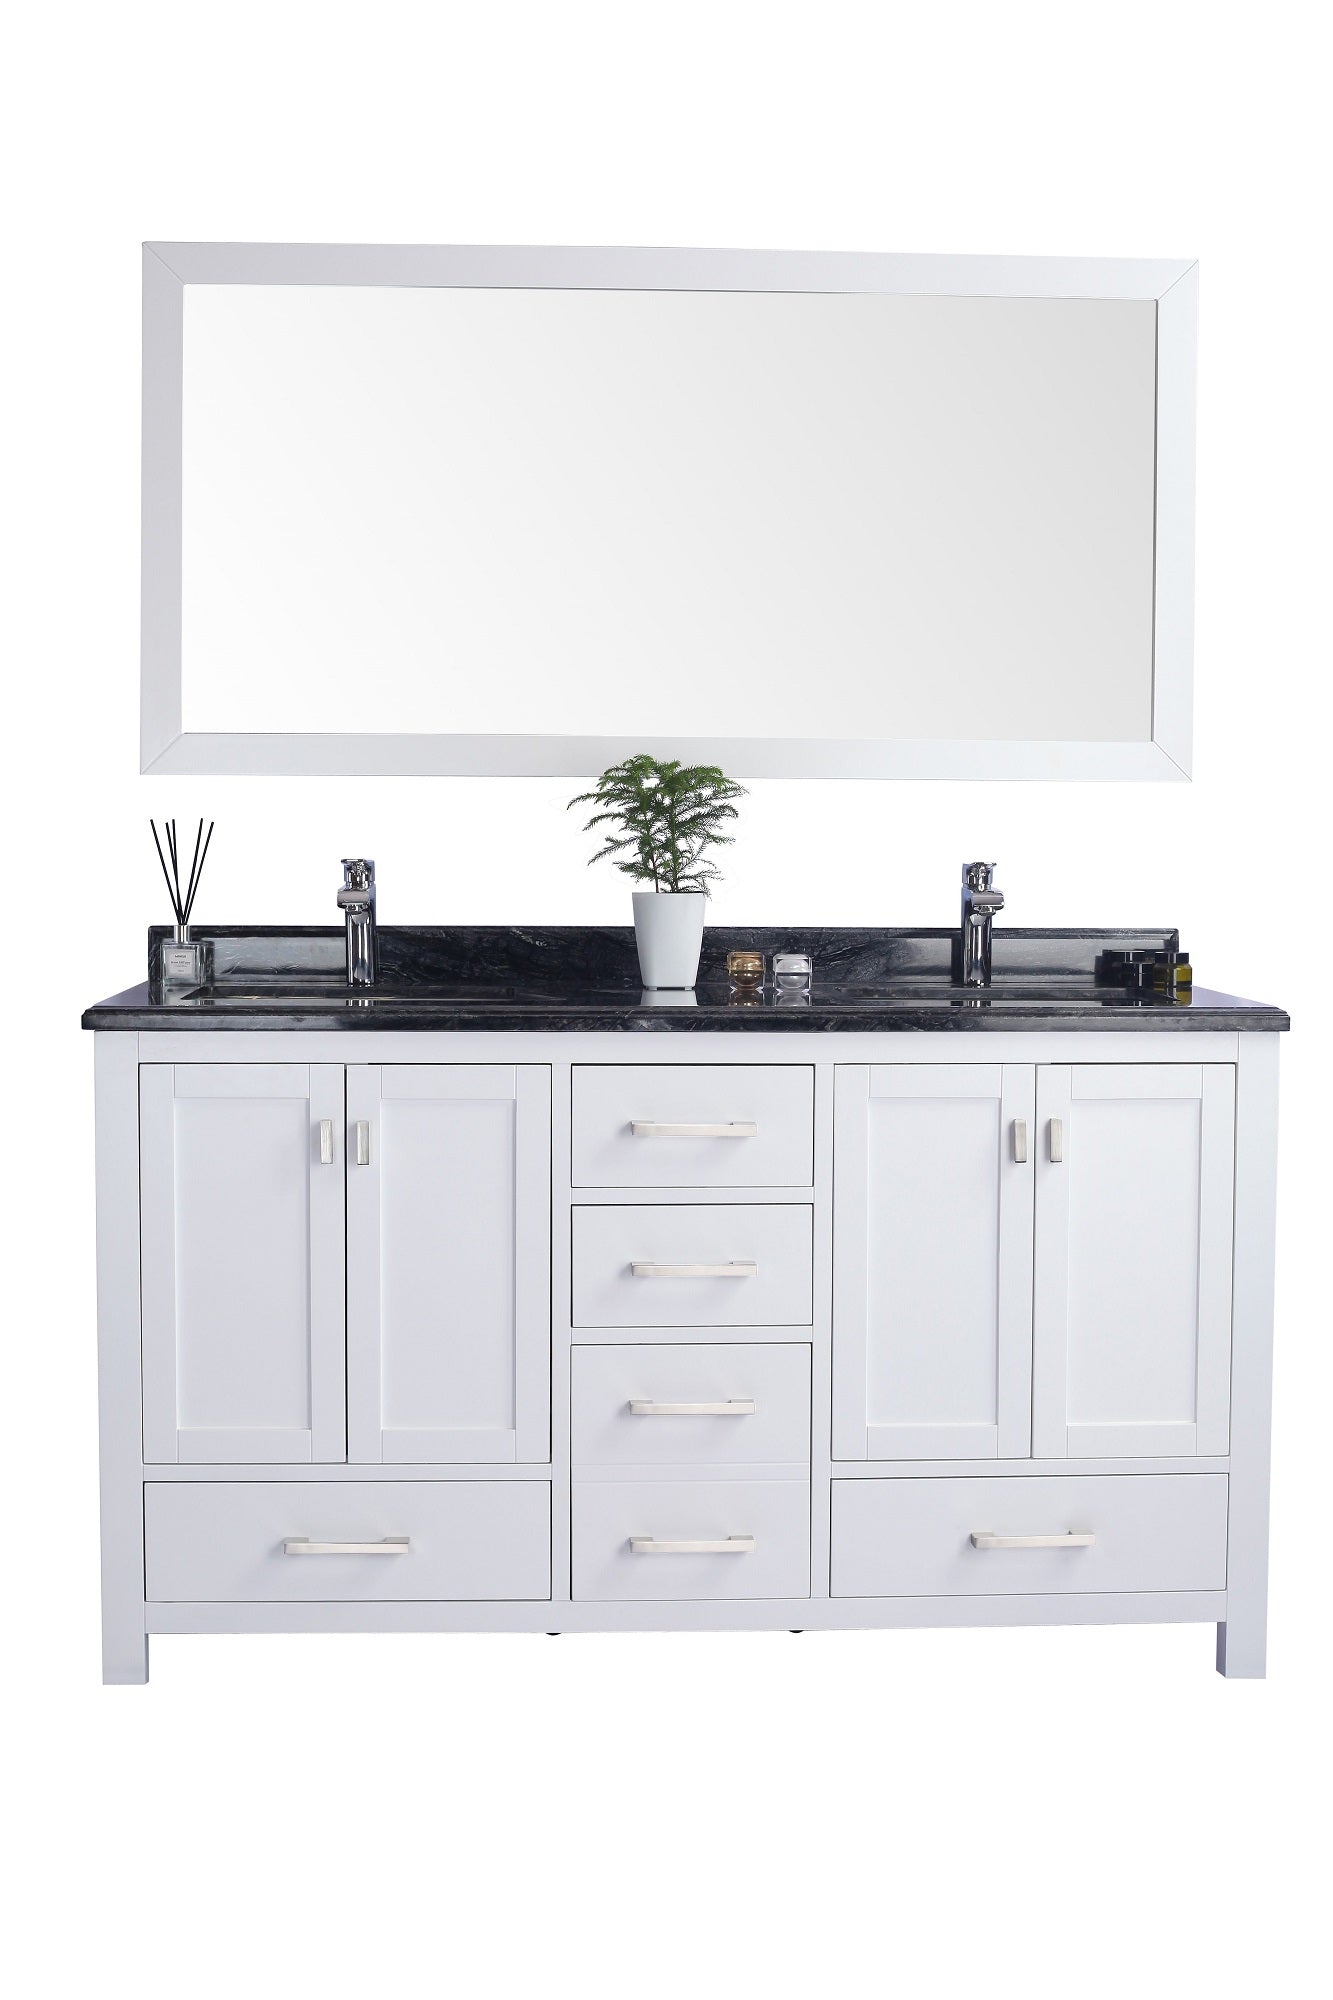 Wilson 60 - Cabinet with Countertop - Luxe Bathroom Vanities Luxury Bathroom Fixtures Bathroom Furniture